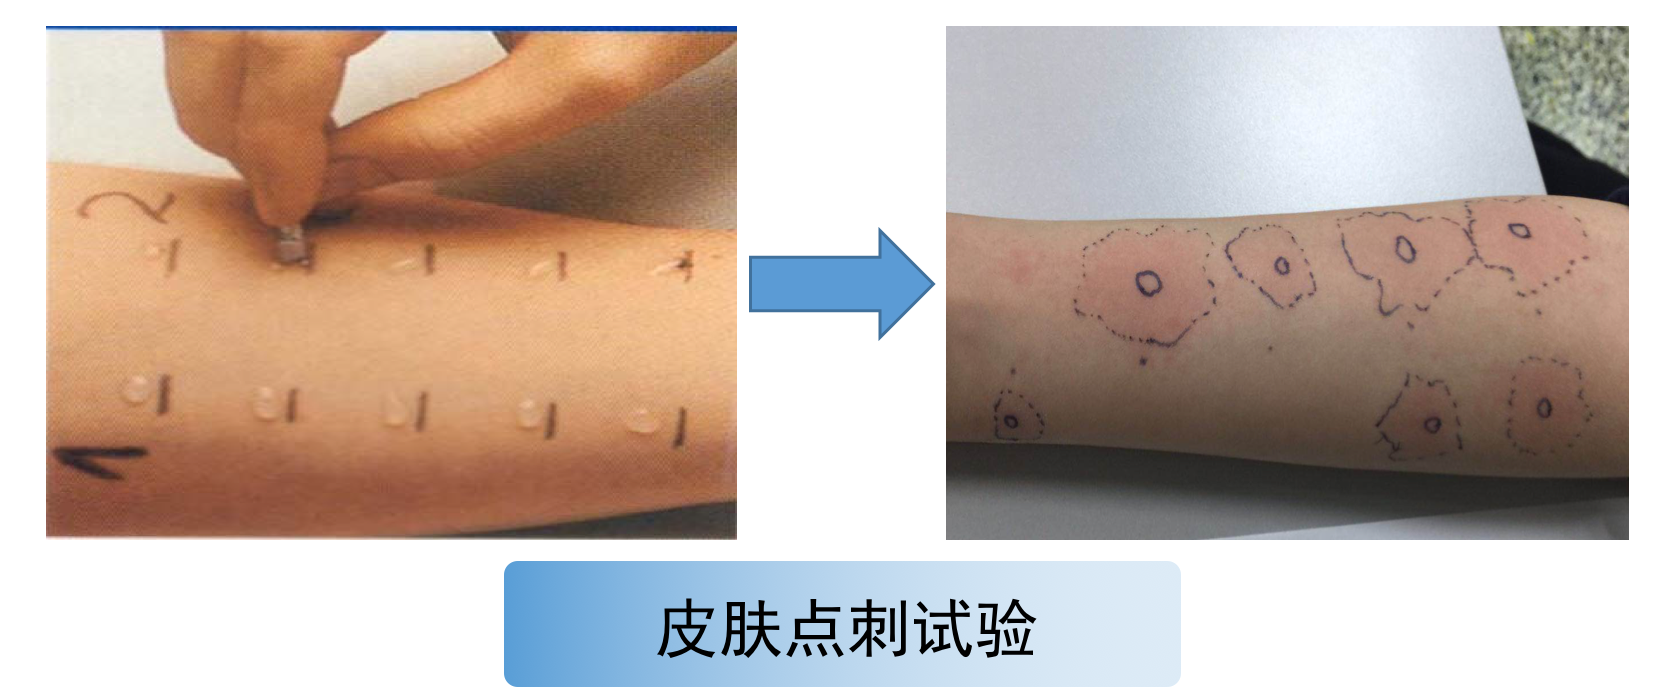 一是皮肤点刺试验:在前臂皮肤上依次滴加不同过敏原,用点刺针轻轻刺入